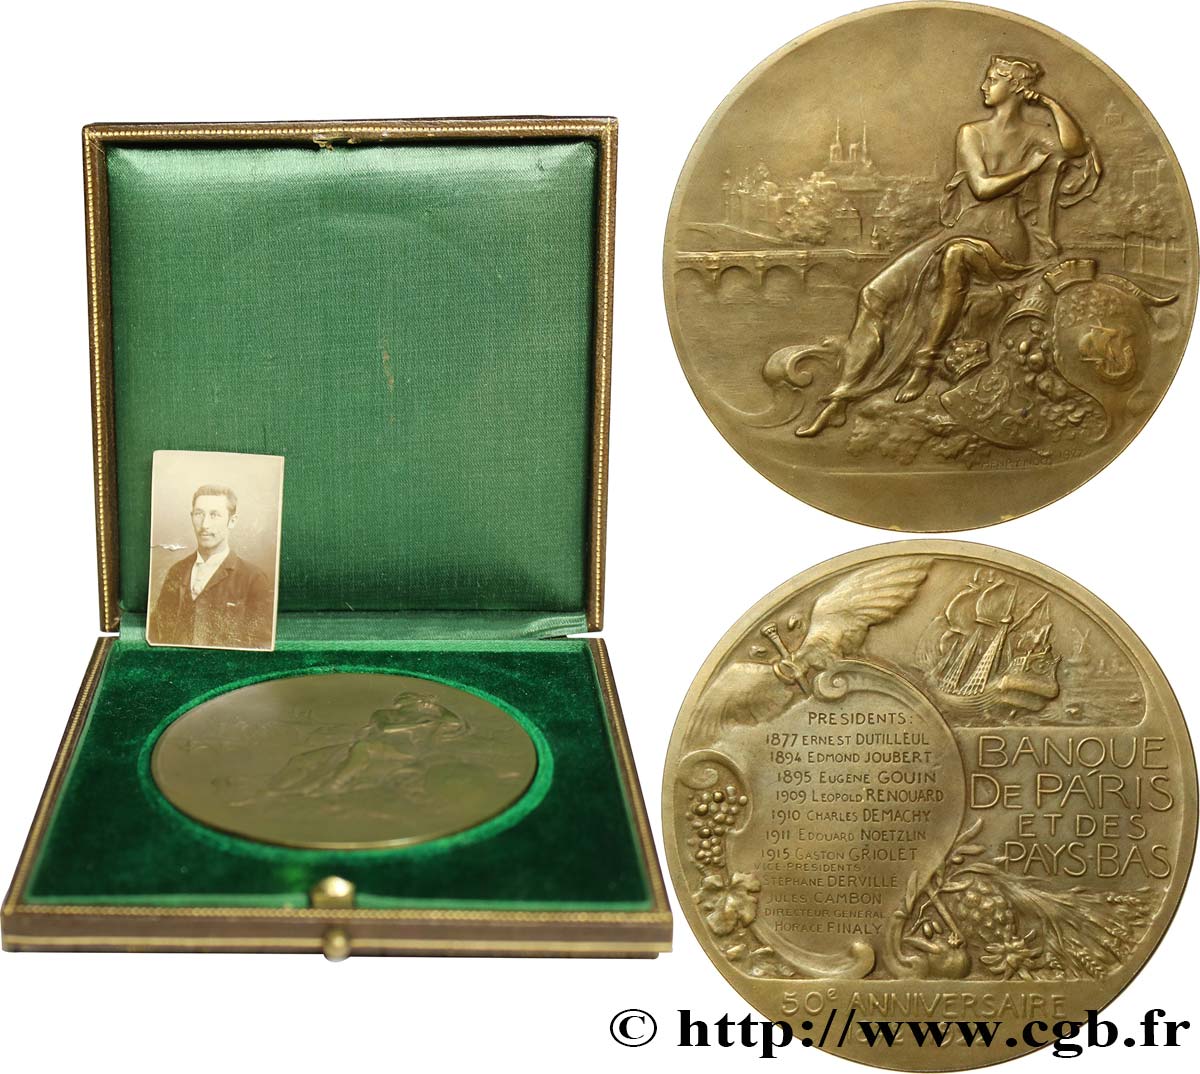 III REPUBLIC Médaille, Banque de Paris et des Pays-Bas, 50e anniversaire AU